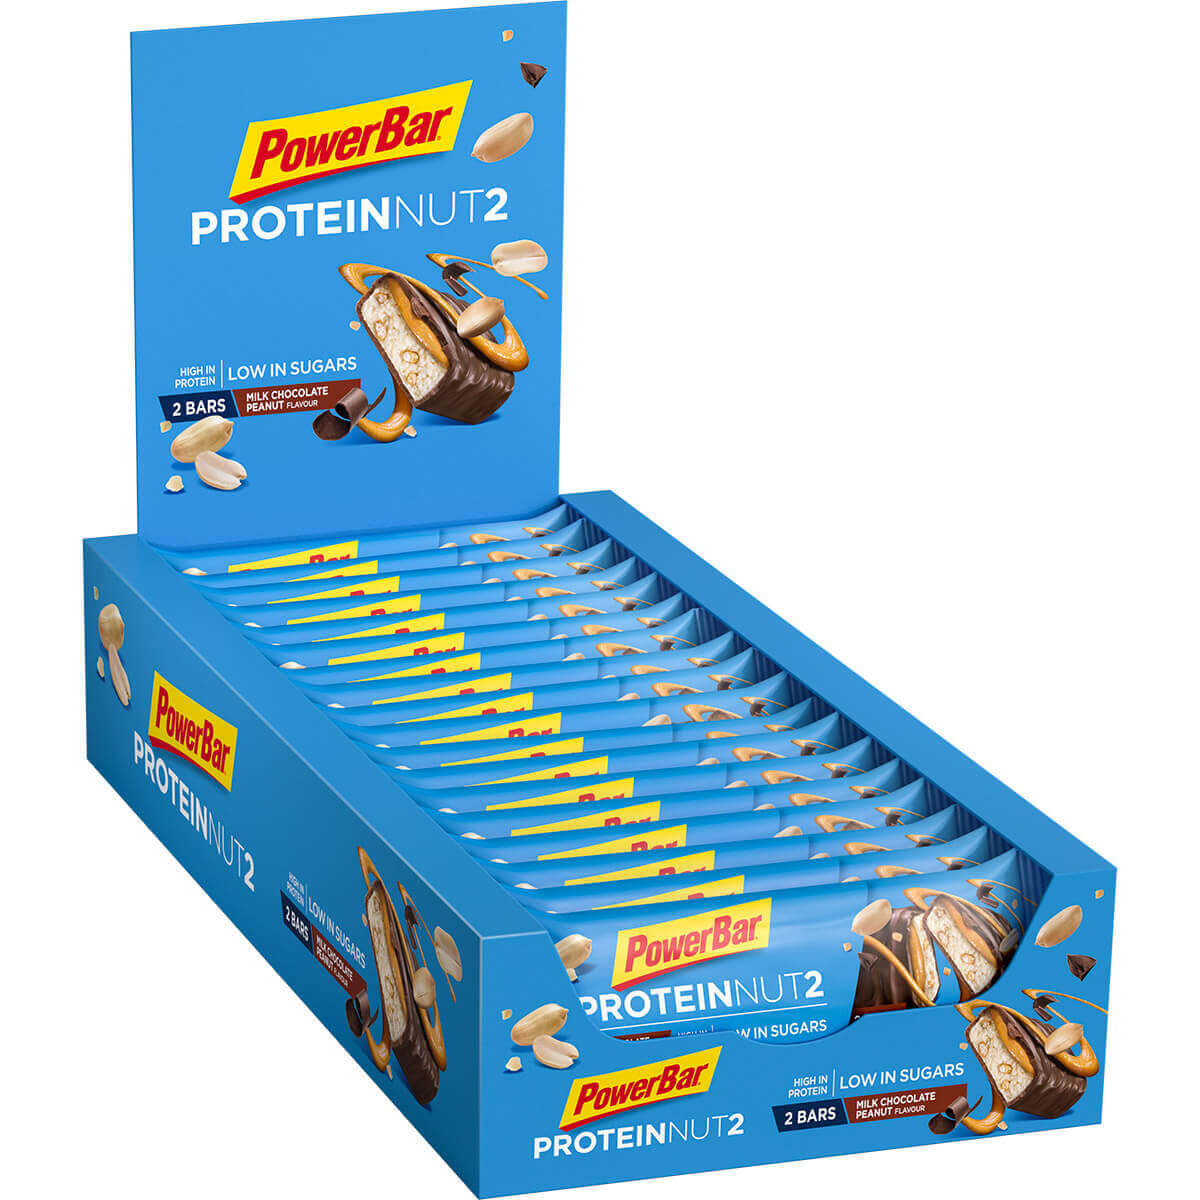 Protein Nut2